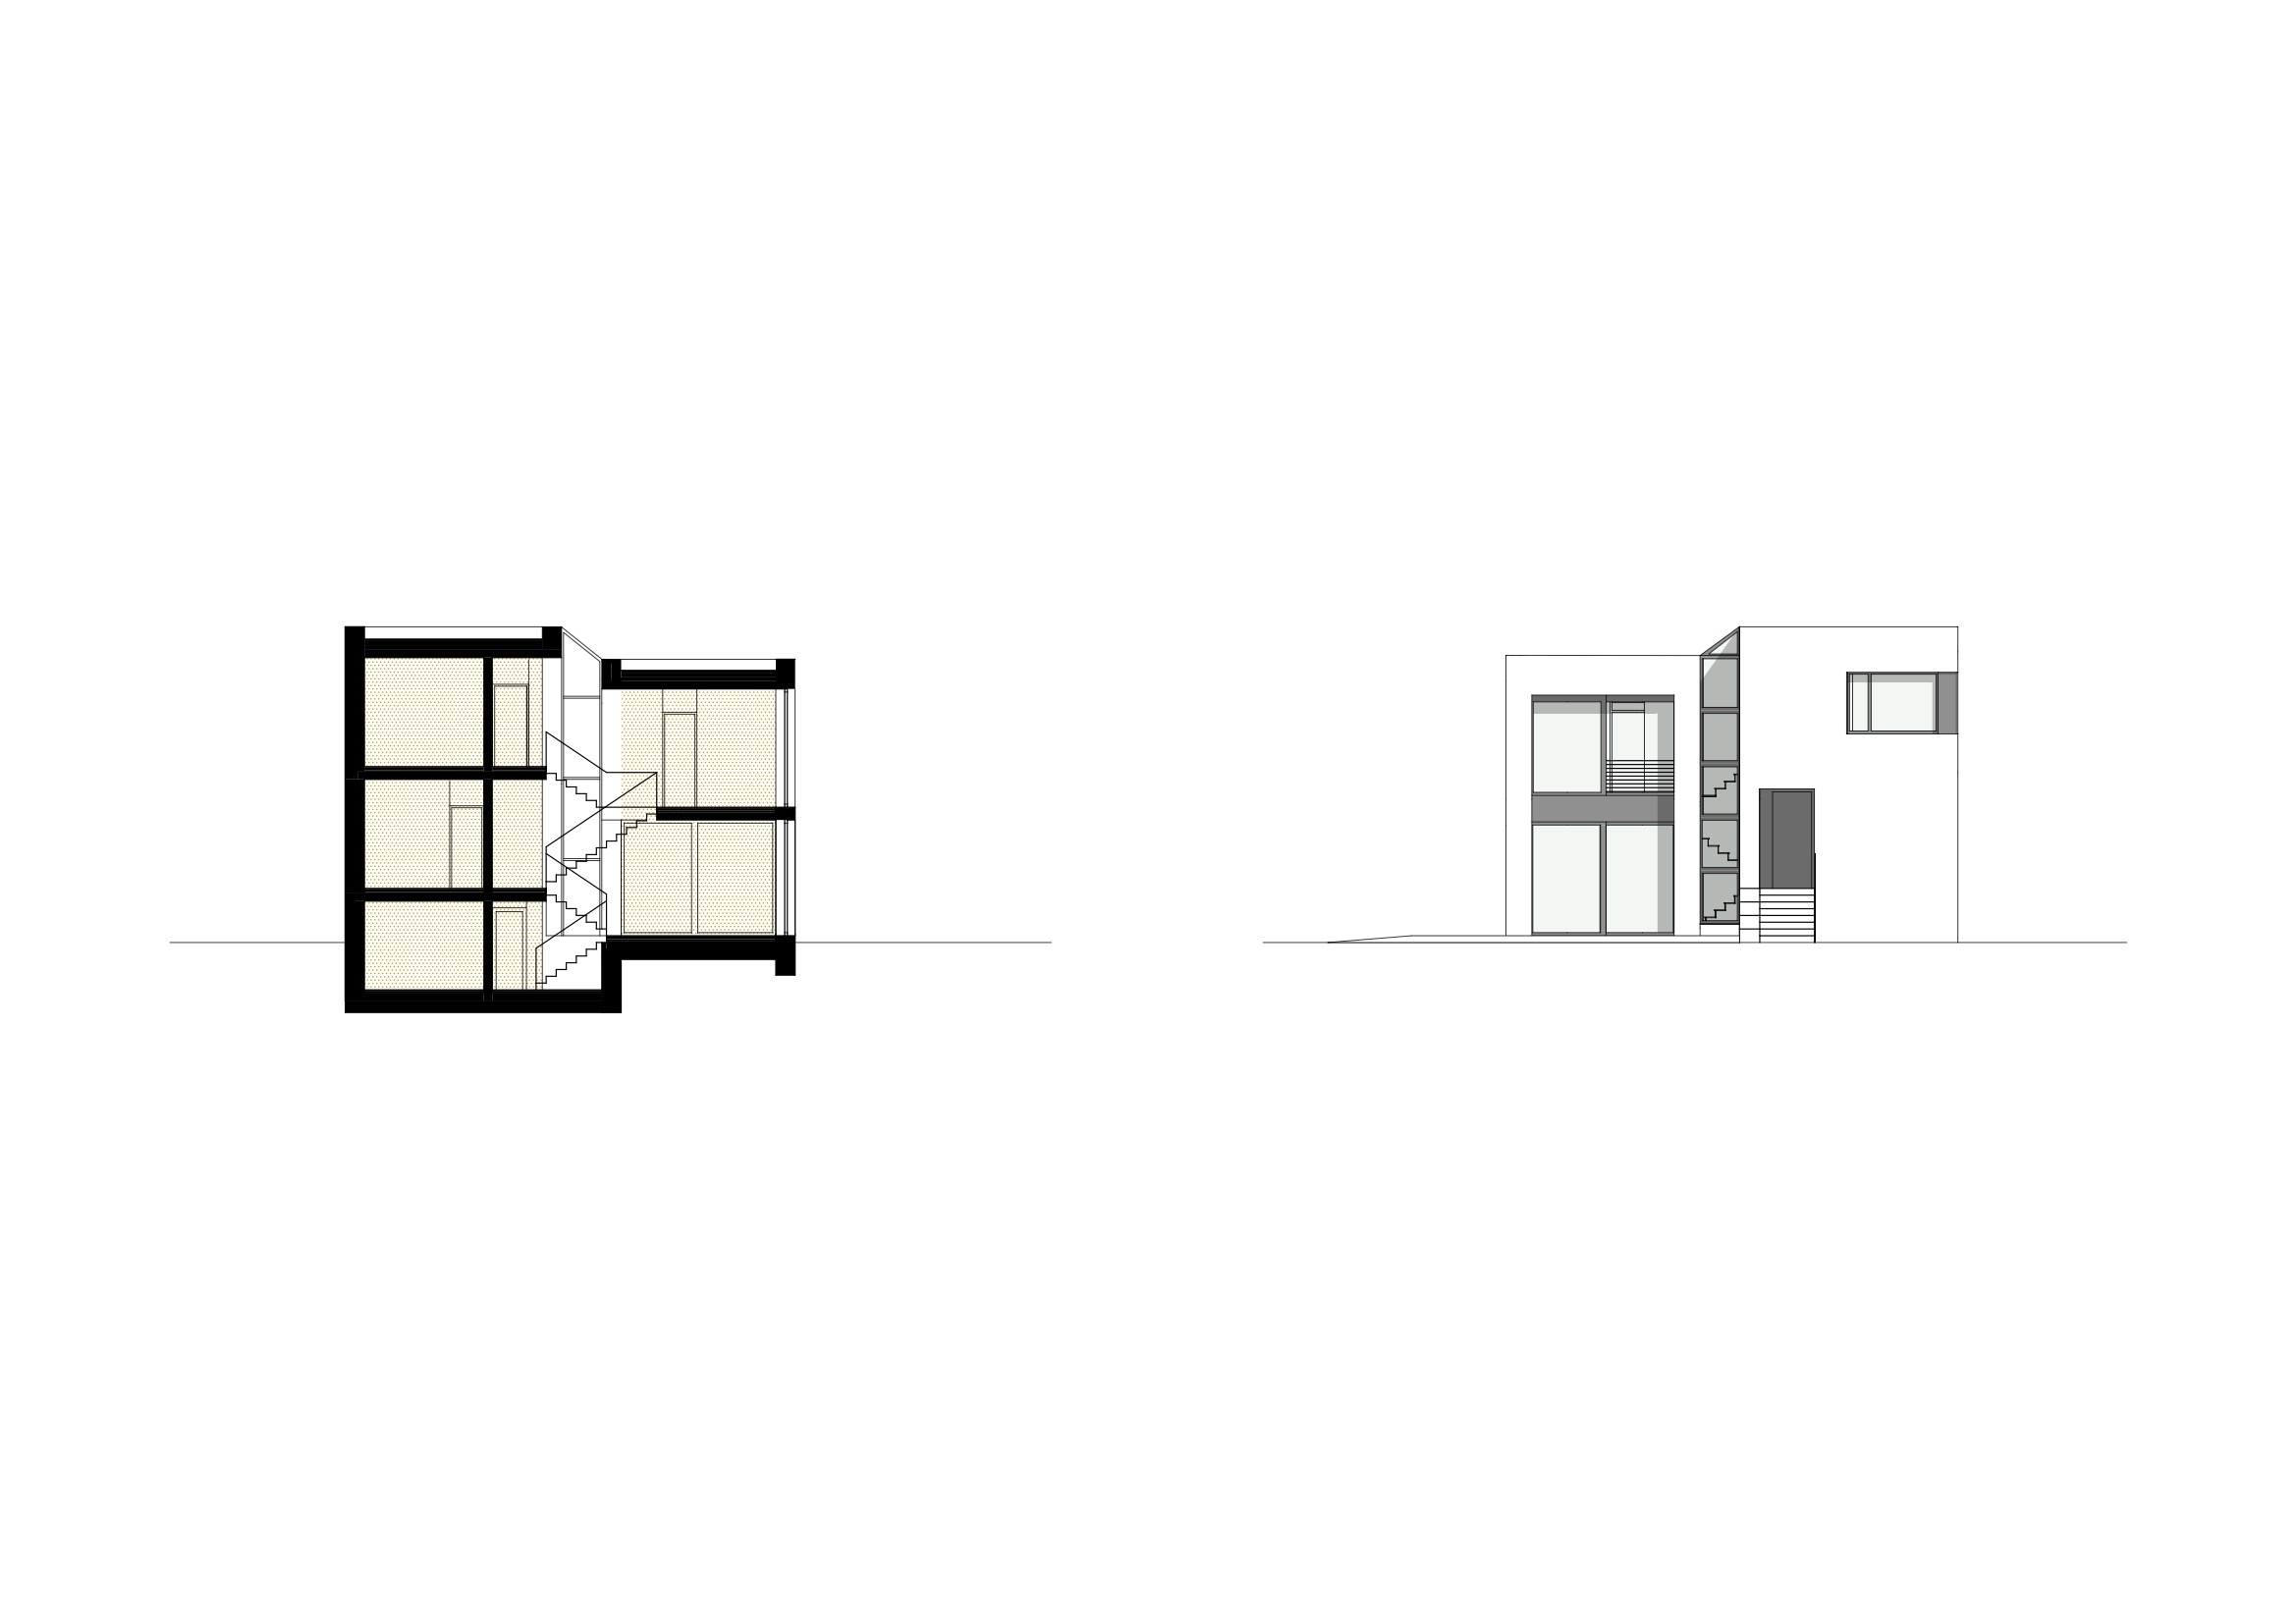 STUDIOKUBIK-studio-kubik-architektur-architecture-berlin-einfamilienhaus-splitlevel_BKA_Schnitt_Ansicht-1